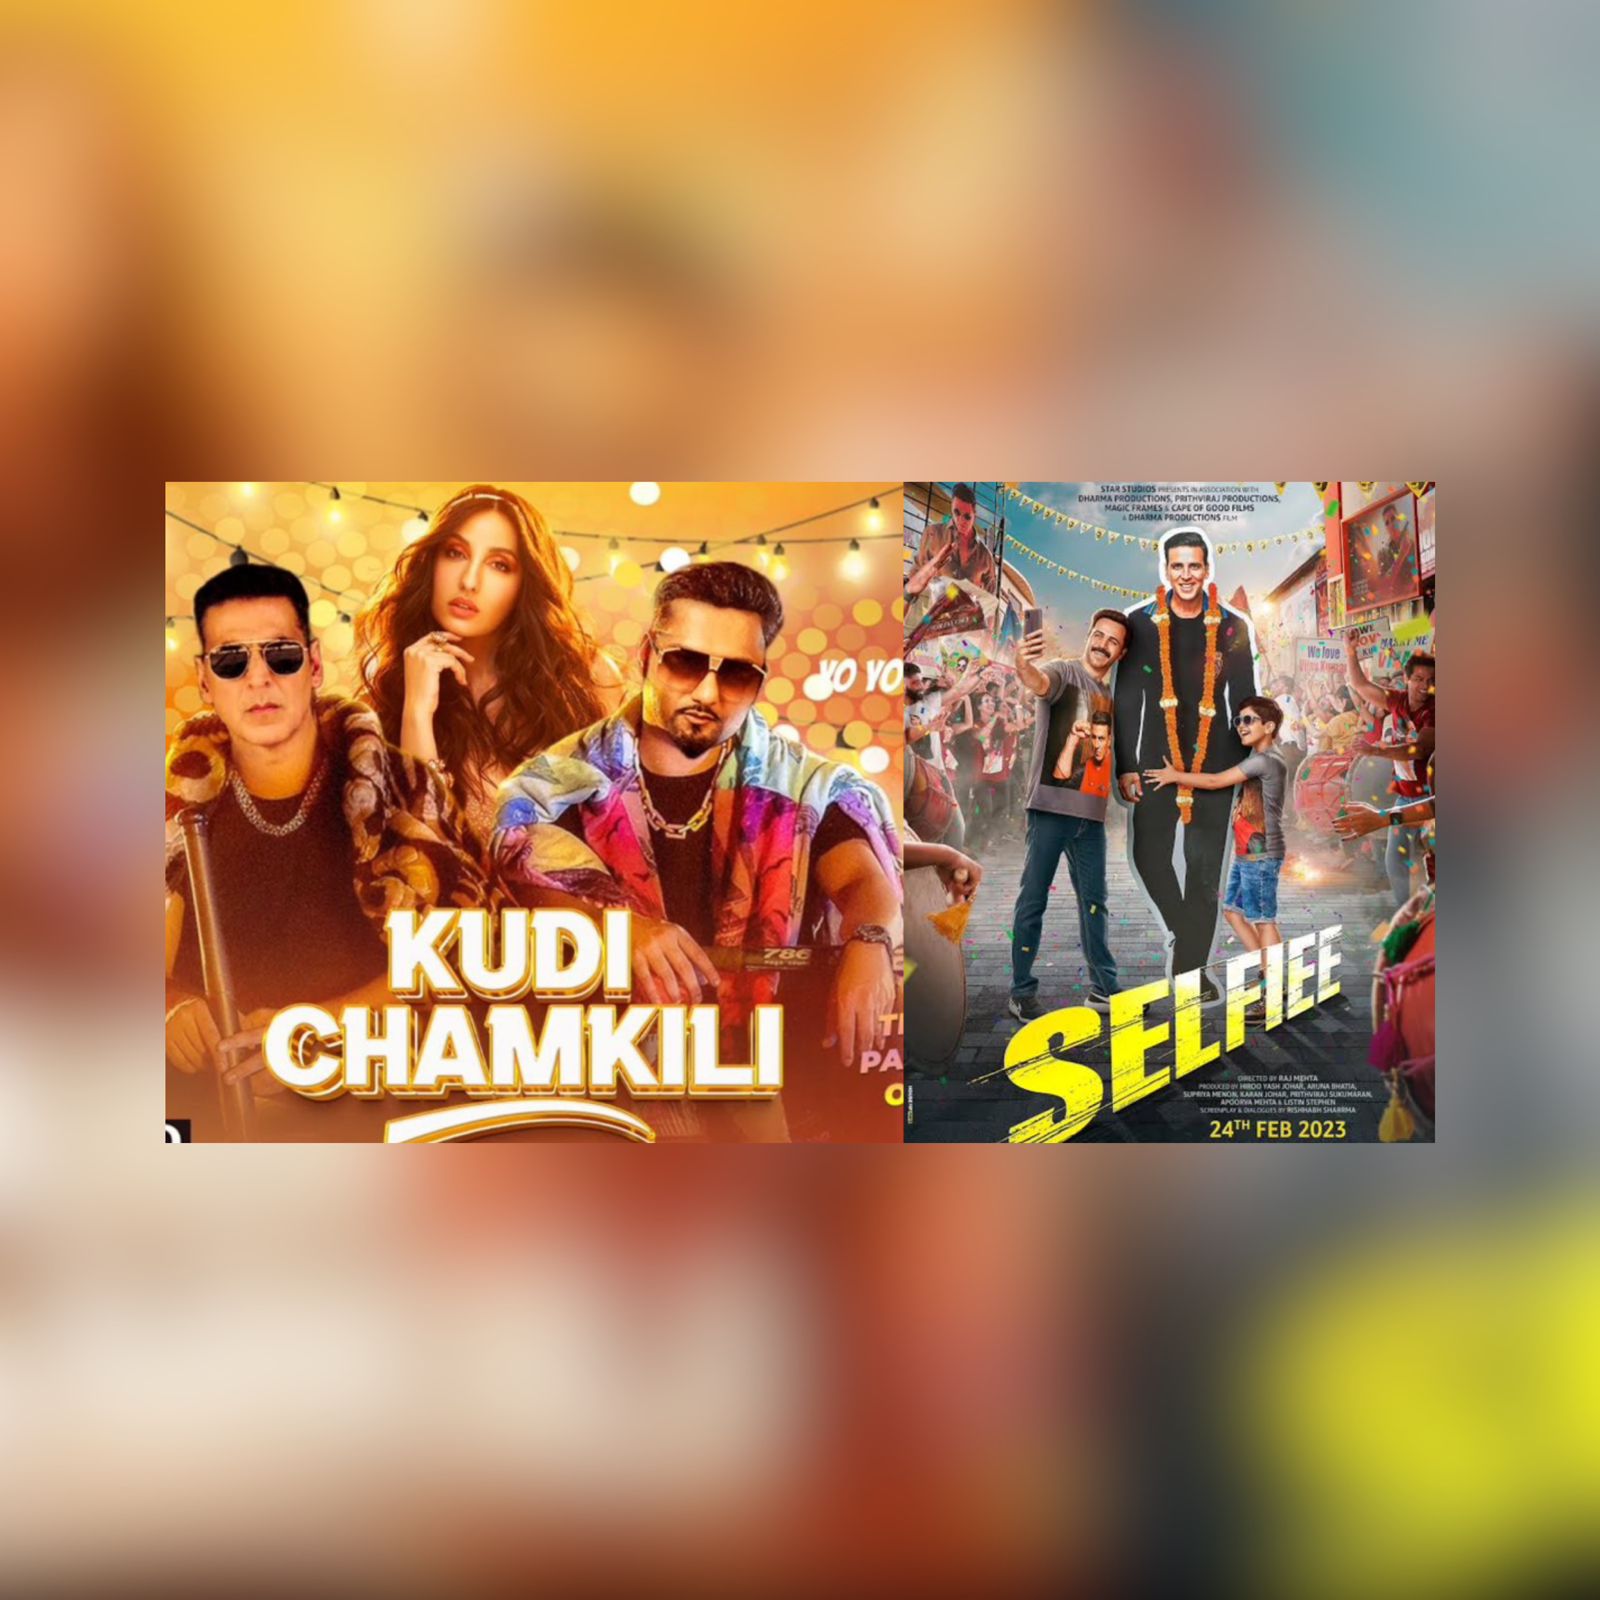 Akshay Kumar Selfiee Movie New Song Kudi Chamkili Released